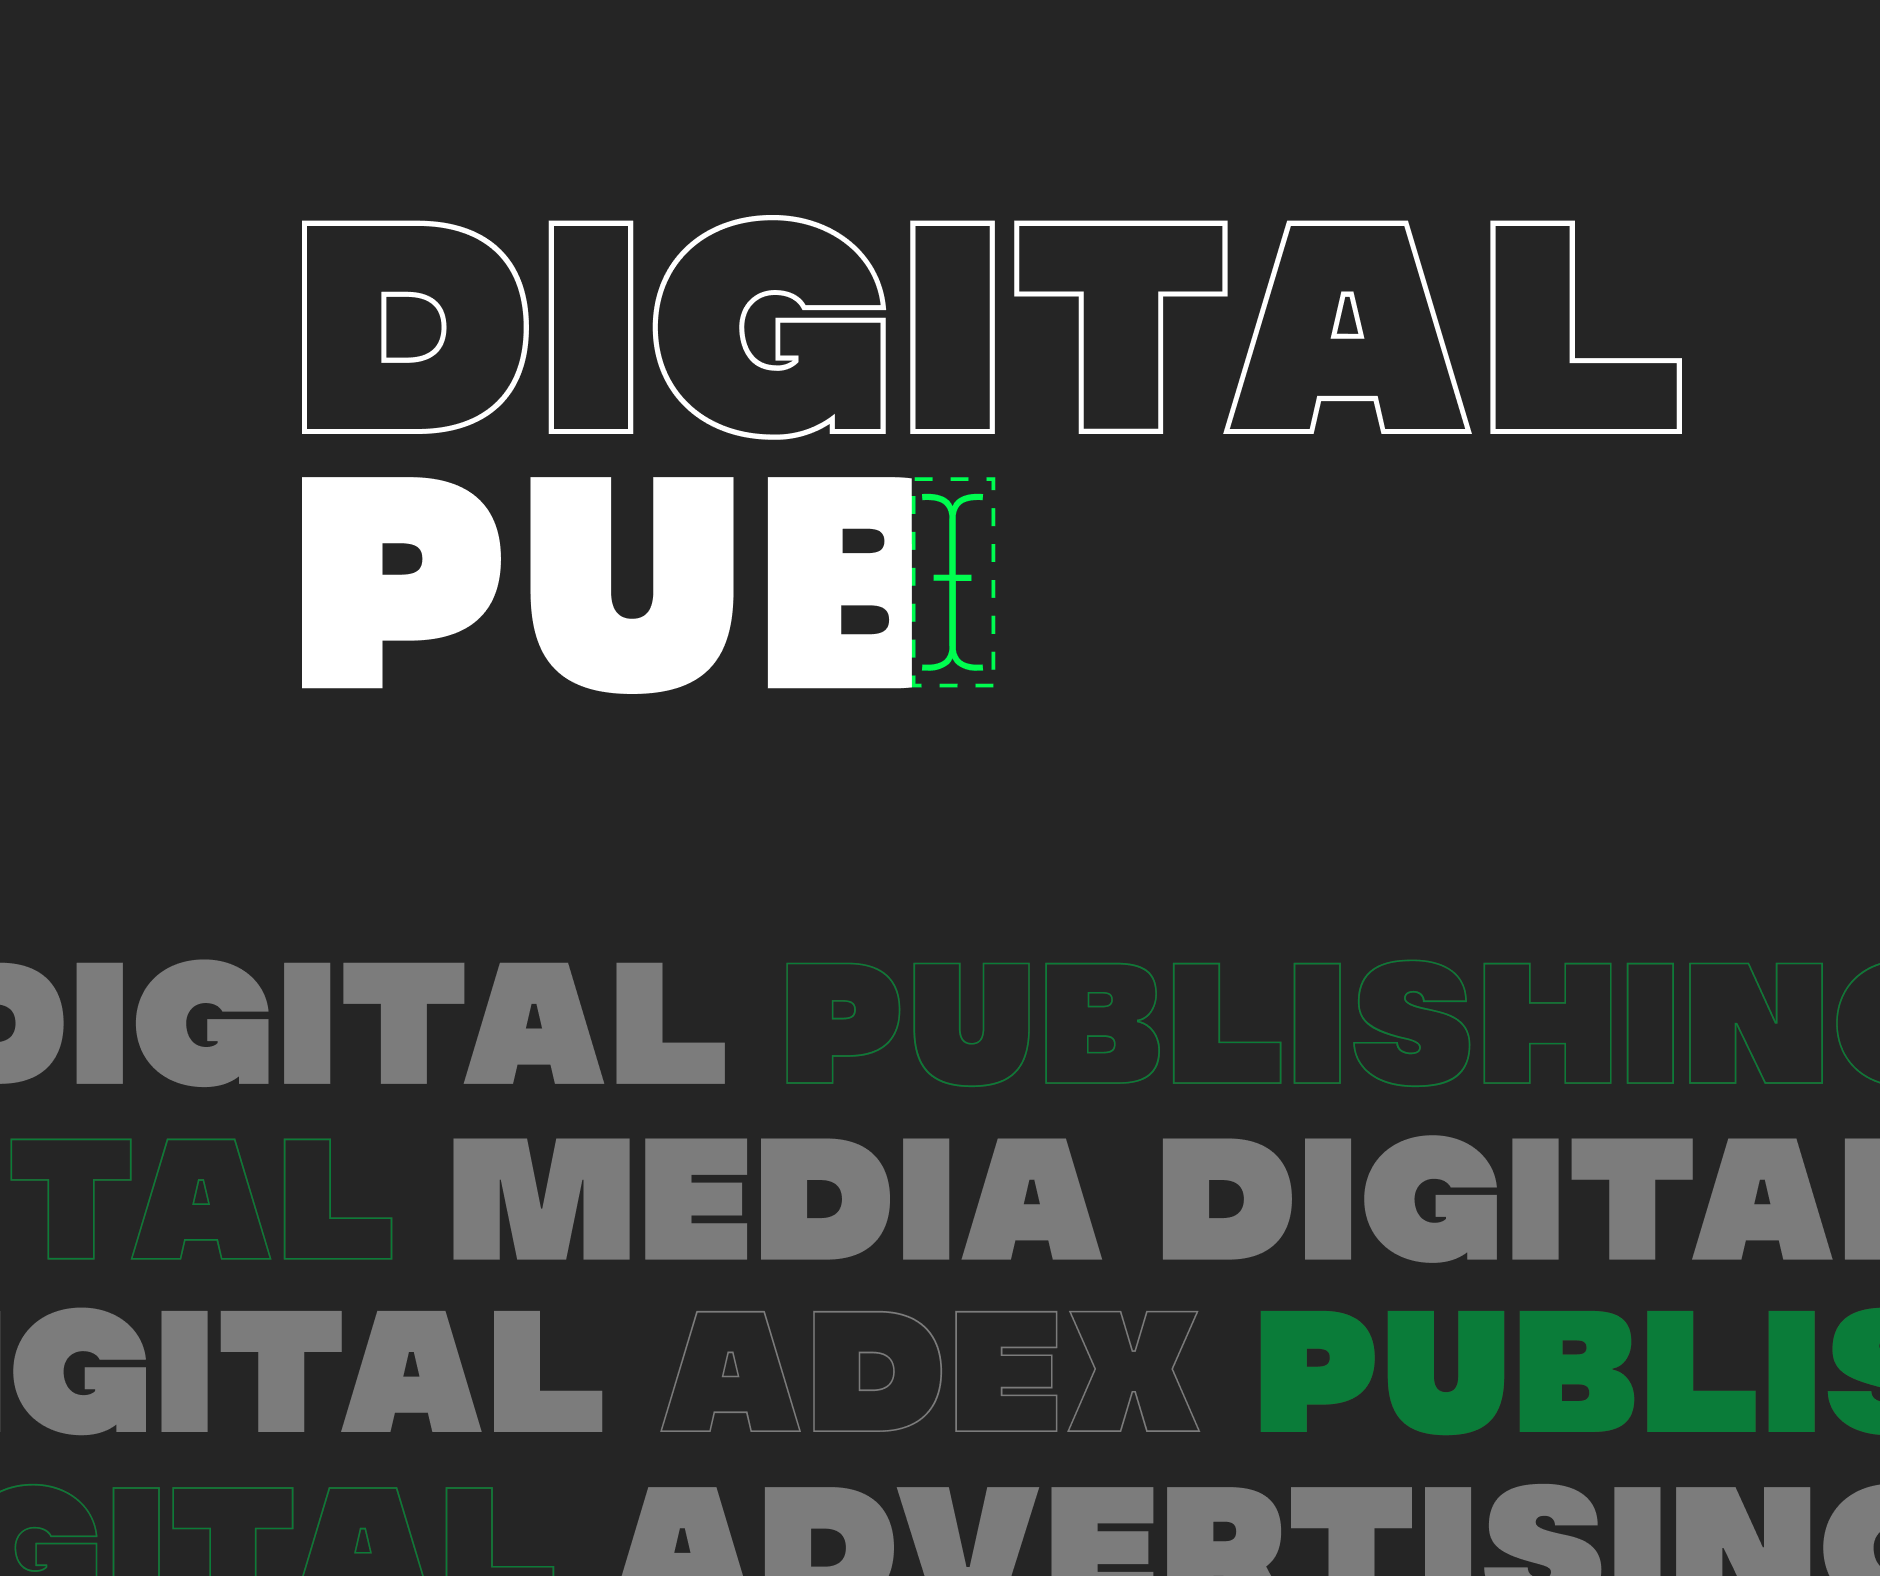 Koliko je veliko tržište digitalnog oglašavanja? Saznat ćemo u petak na DigitalPubu!